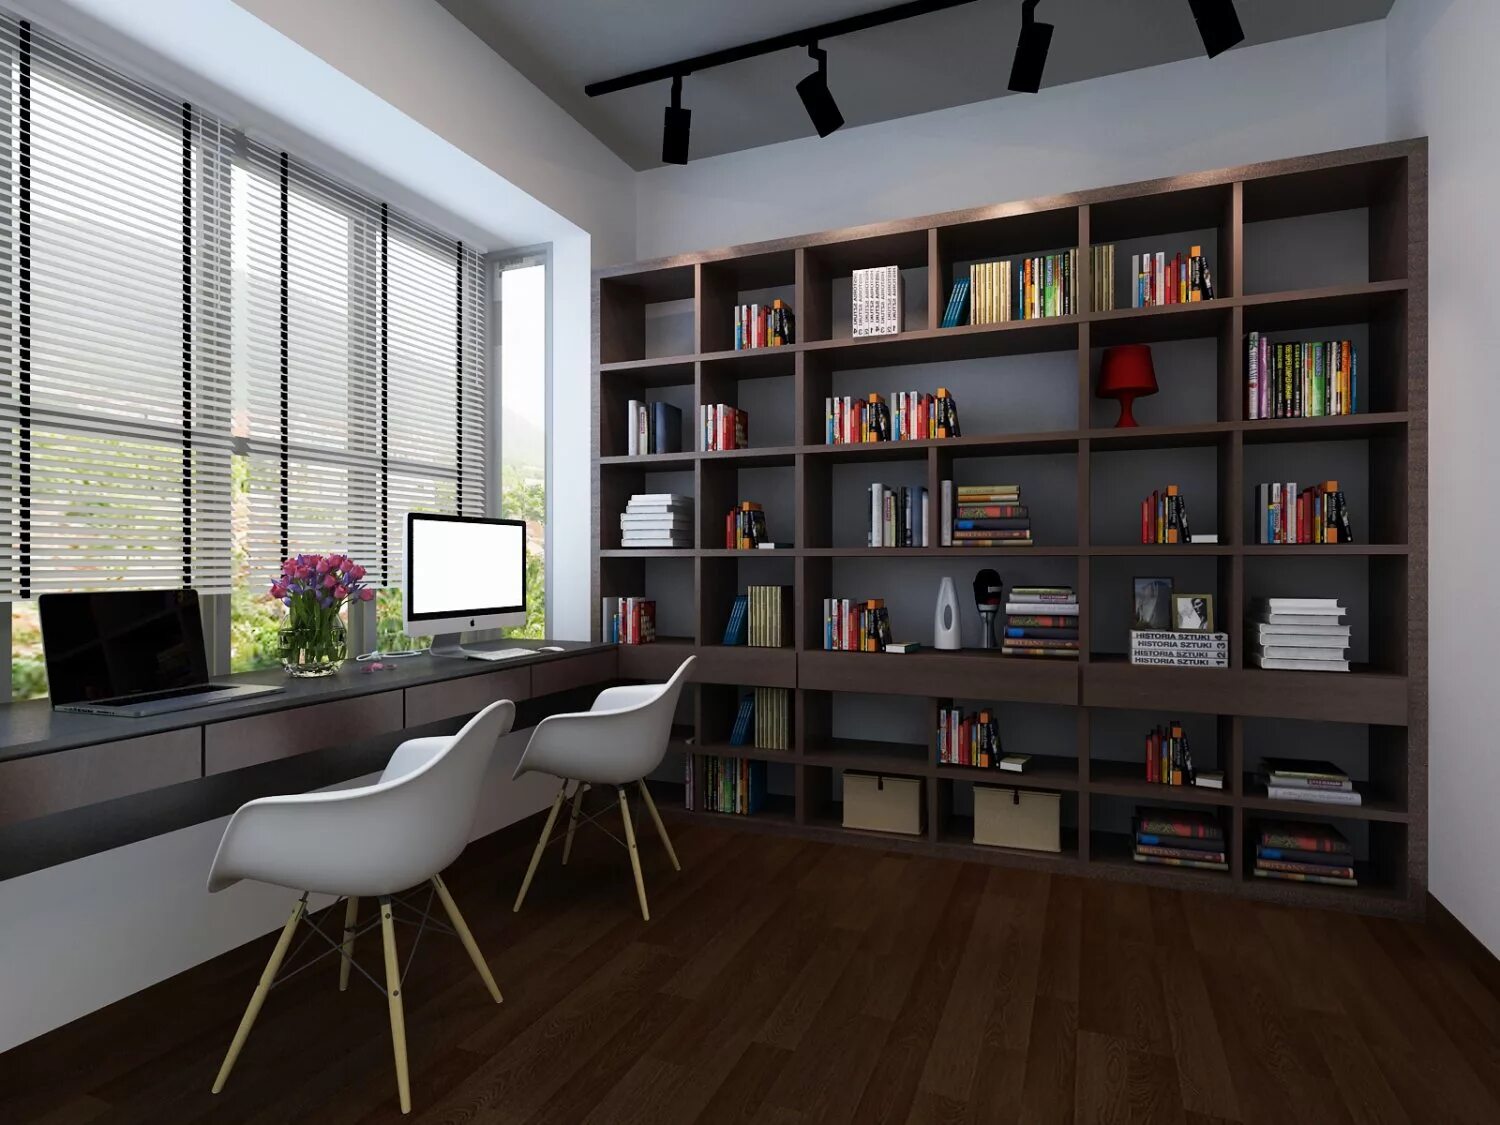 Библиотека для 3d Max. Study комната. 3д модель интерьера библиотеки. Дизайн интерьера 3d библиотеки. 3d library